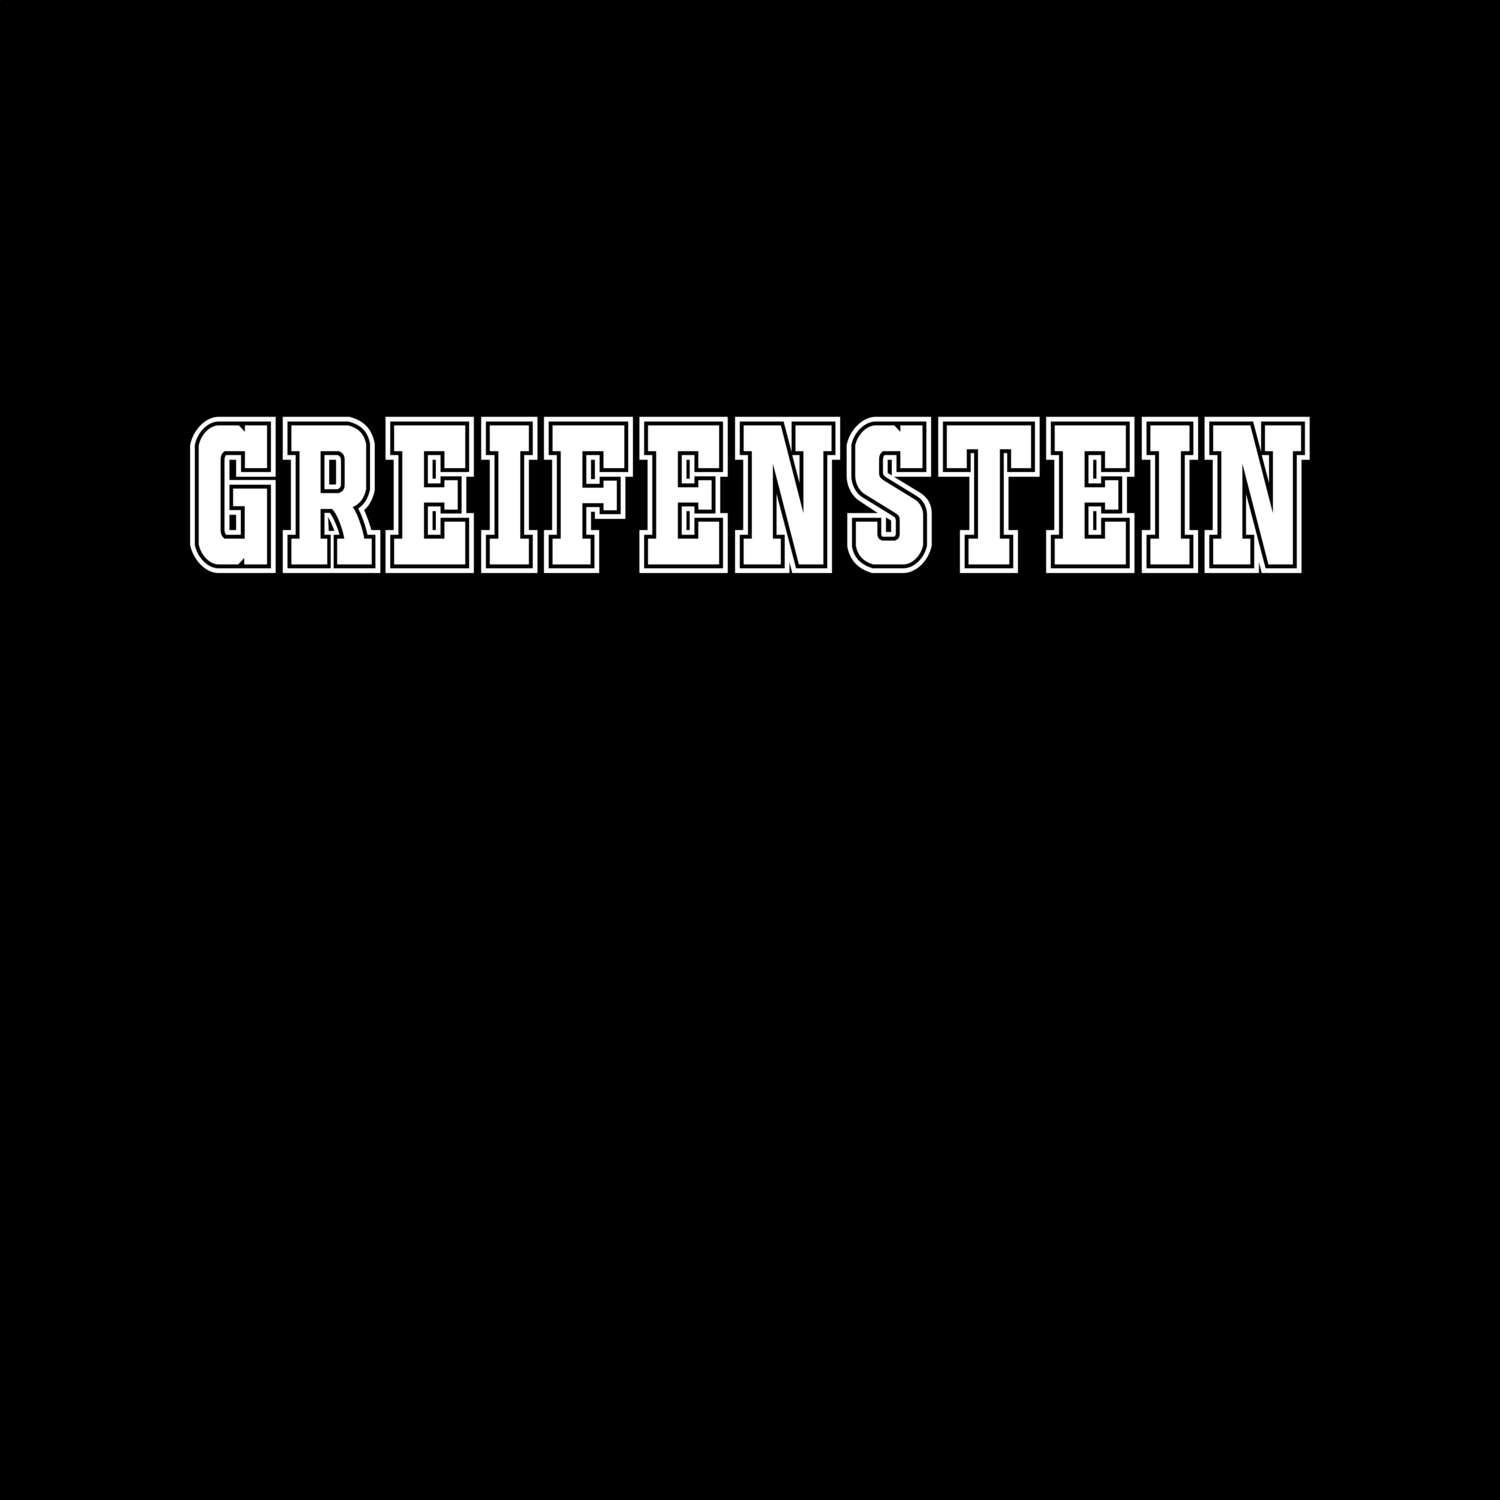 Greifenstein T-Shirt »Classic«